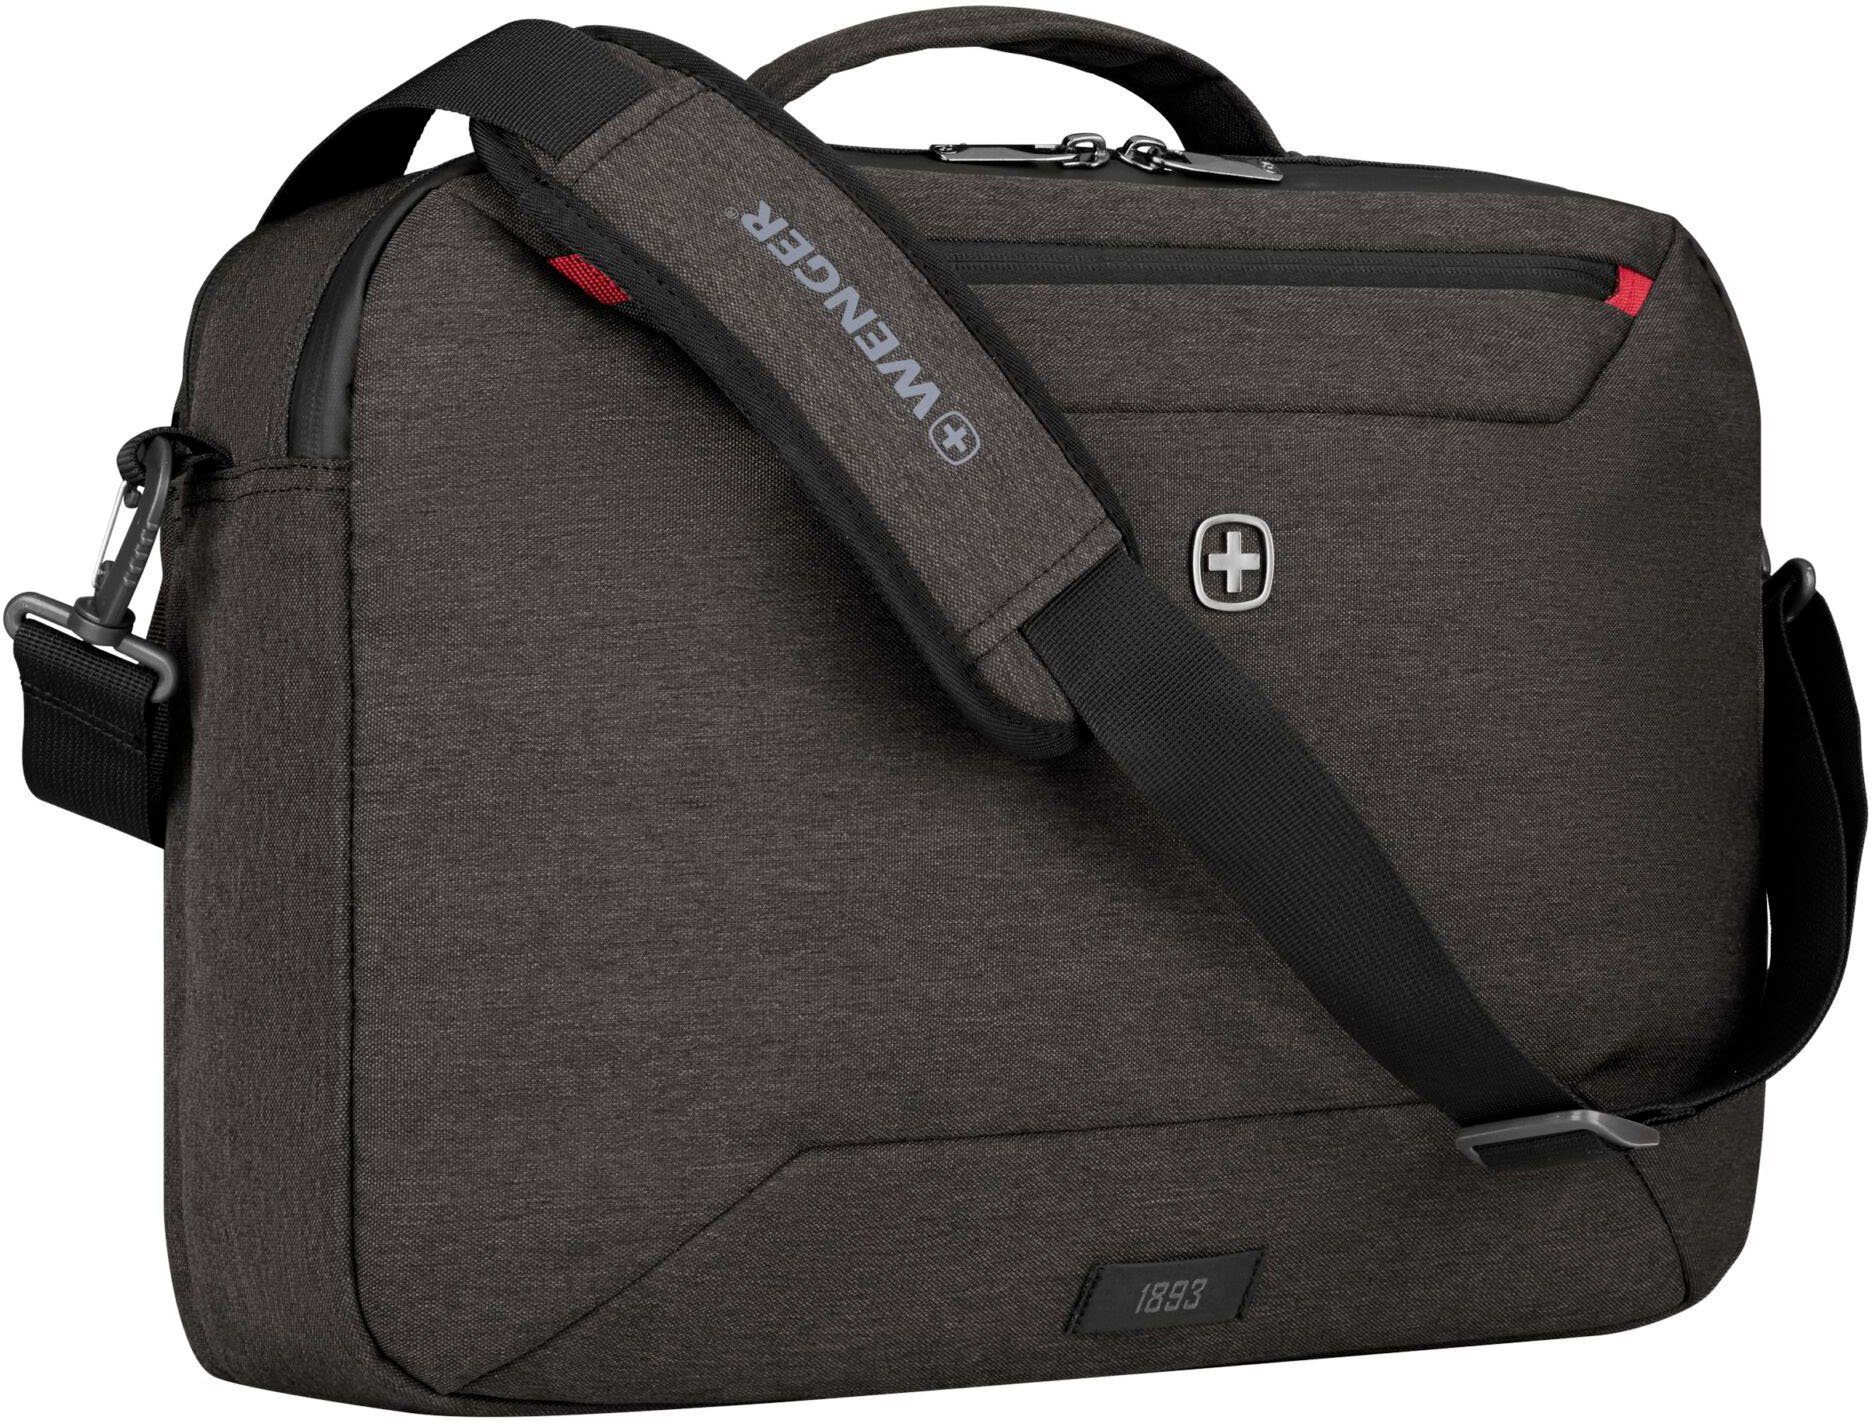 auch grau, tragbar Commute, 16-Zoll Rucksack mit Laptoptasche als Laptopfach, Wenger